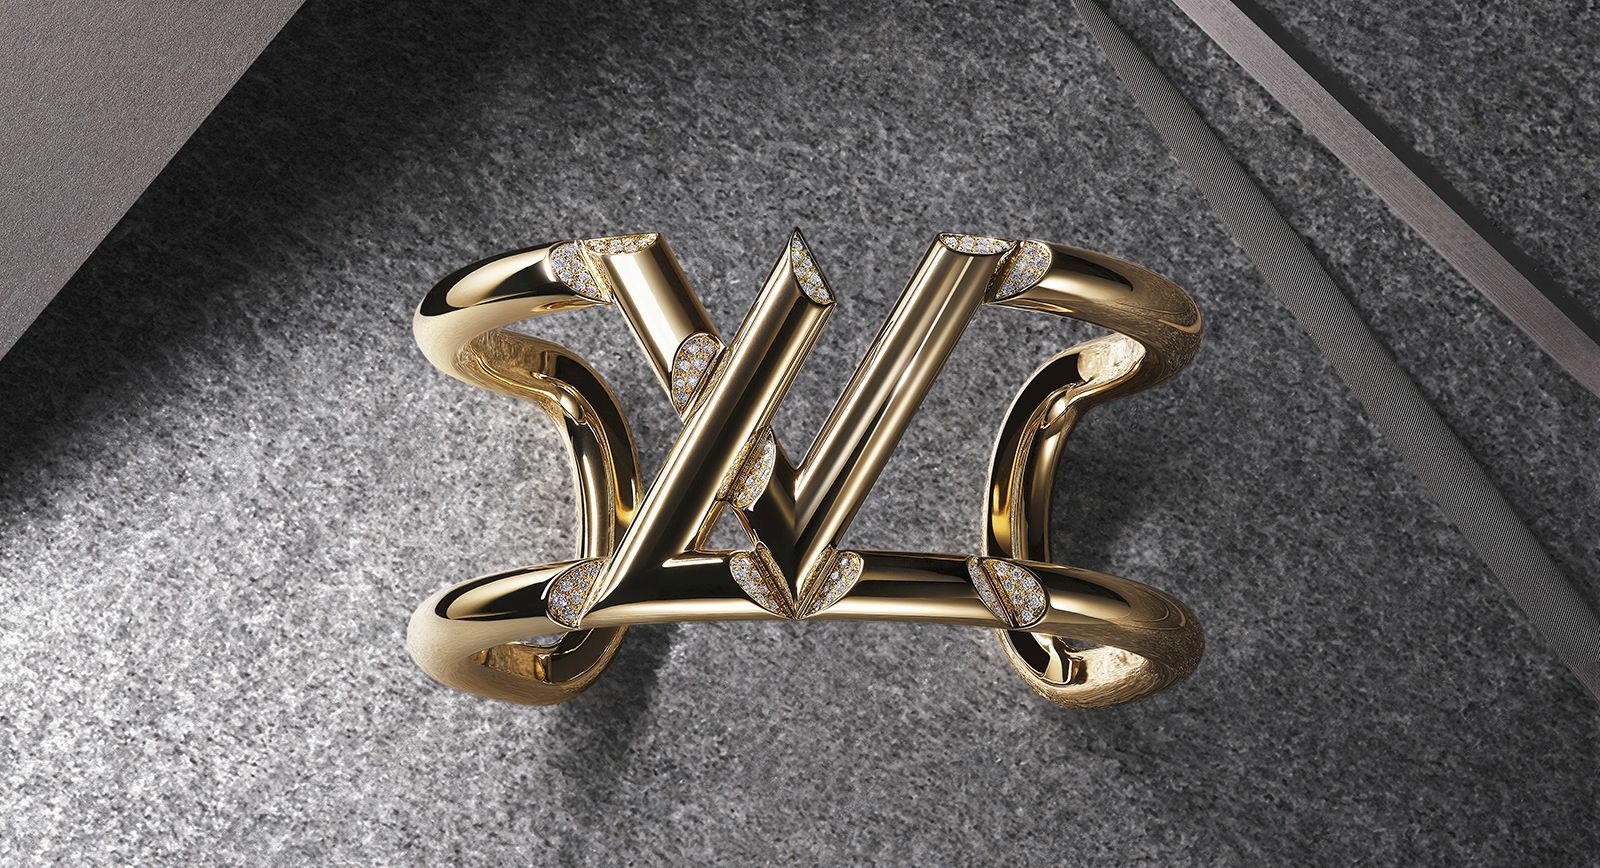 The LV Volt bracelet by Louis Vuitton